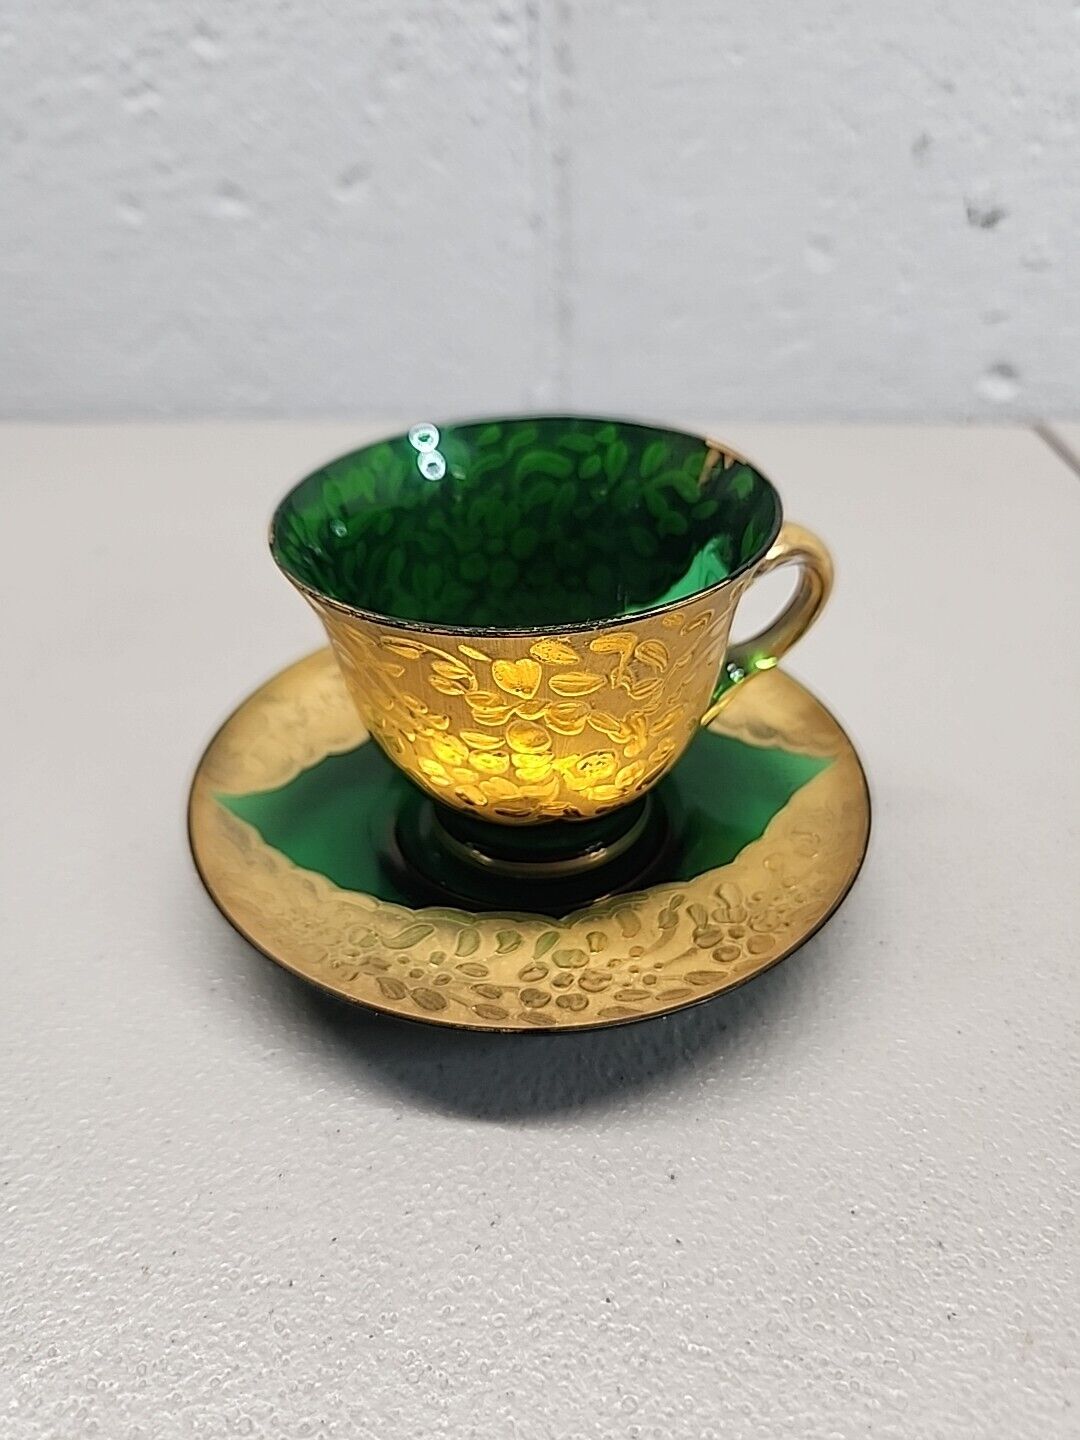 Antique Moser Green Glass Teacup & Saucer